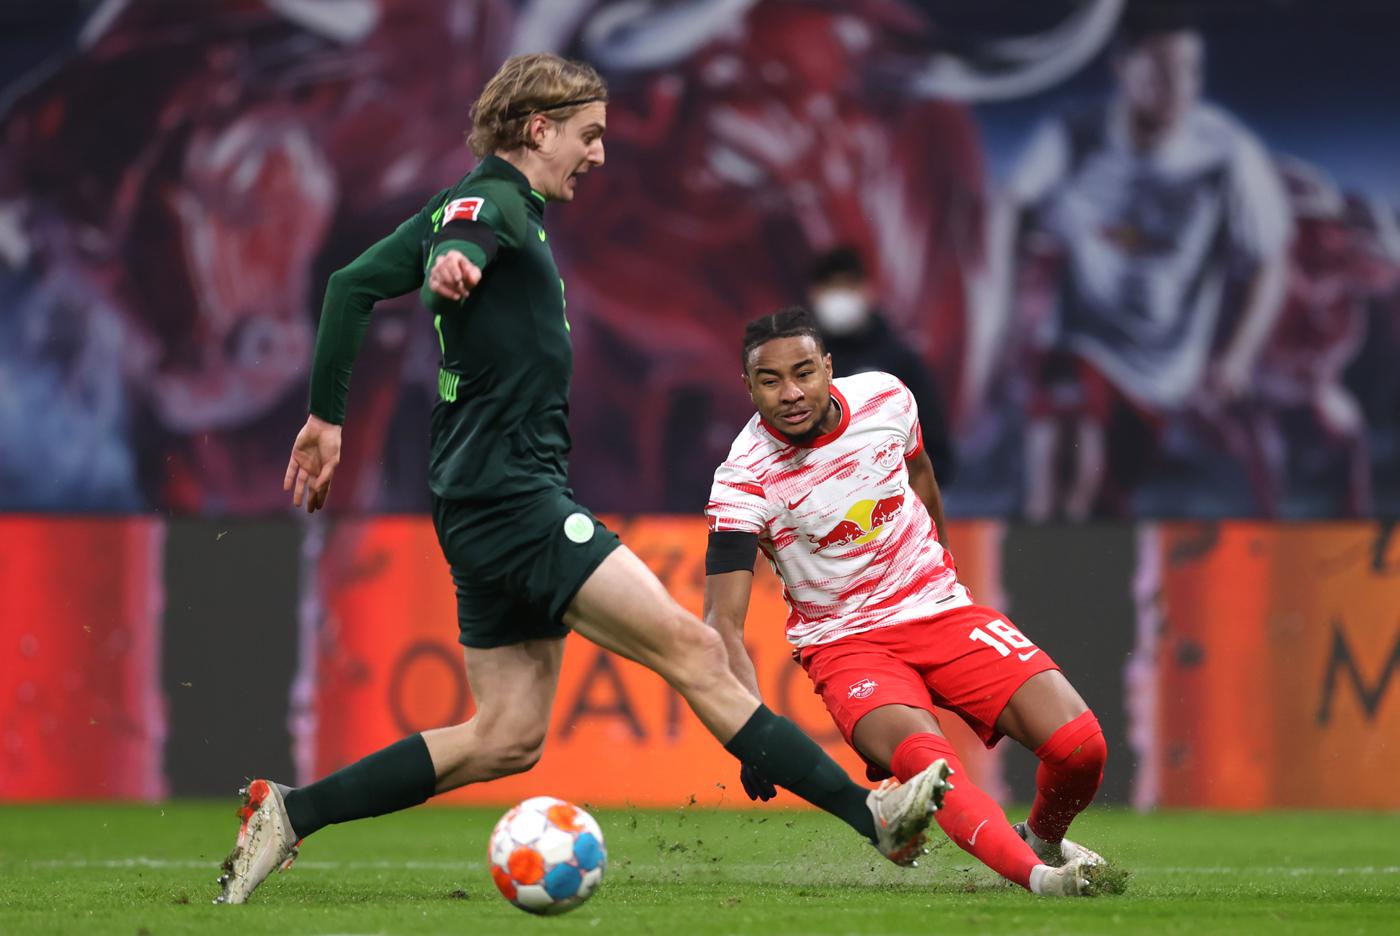 Wolfsburg - RB Leipzig - 0:3. German Championship, round 21